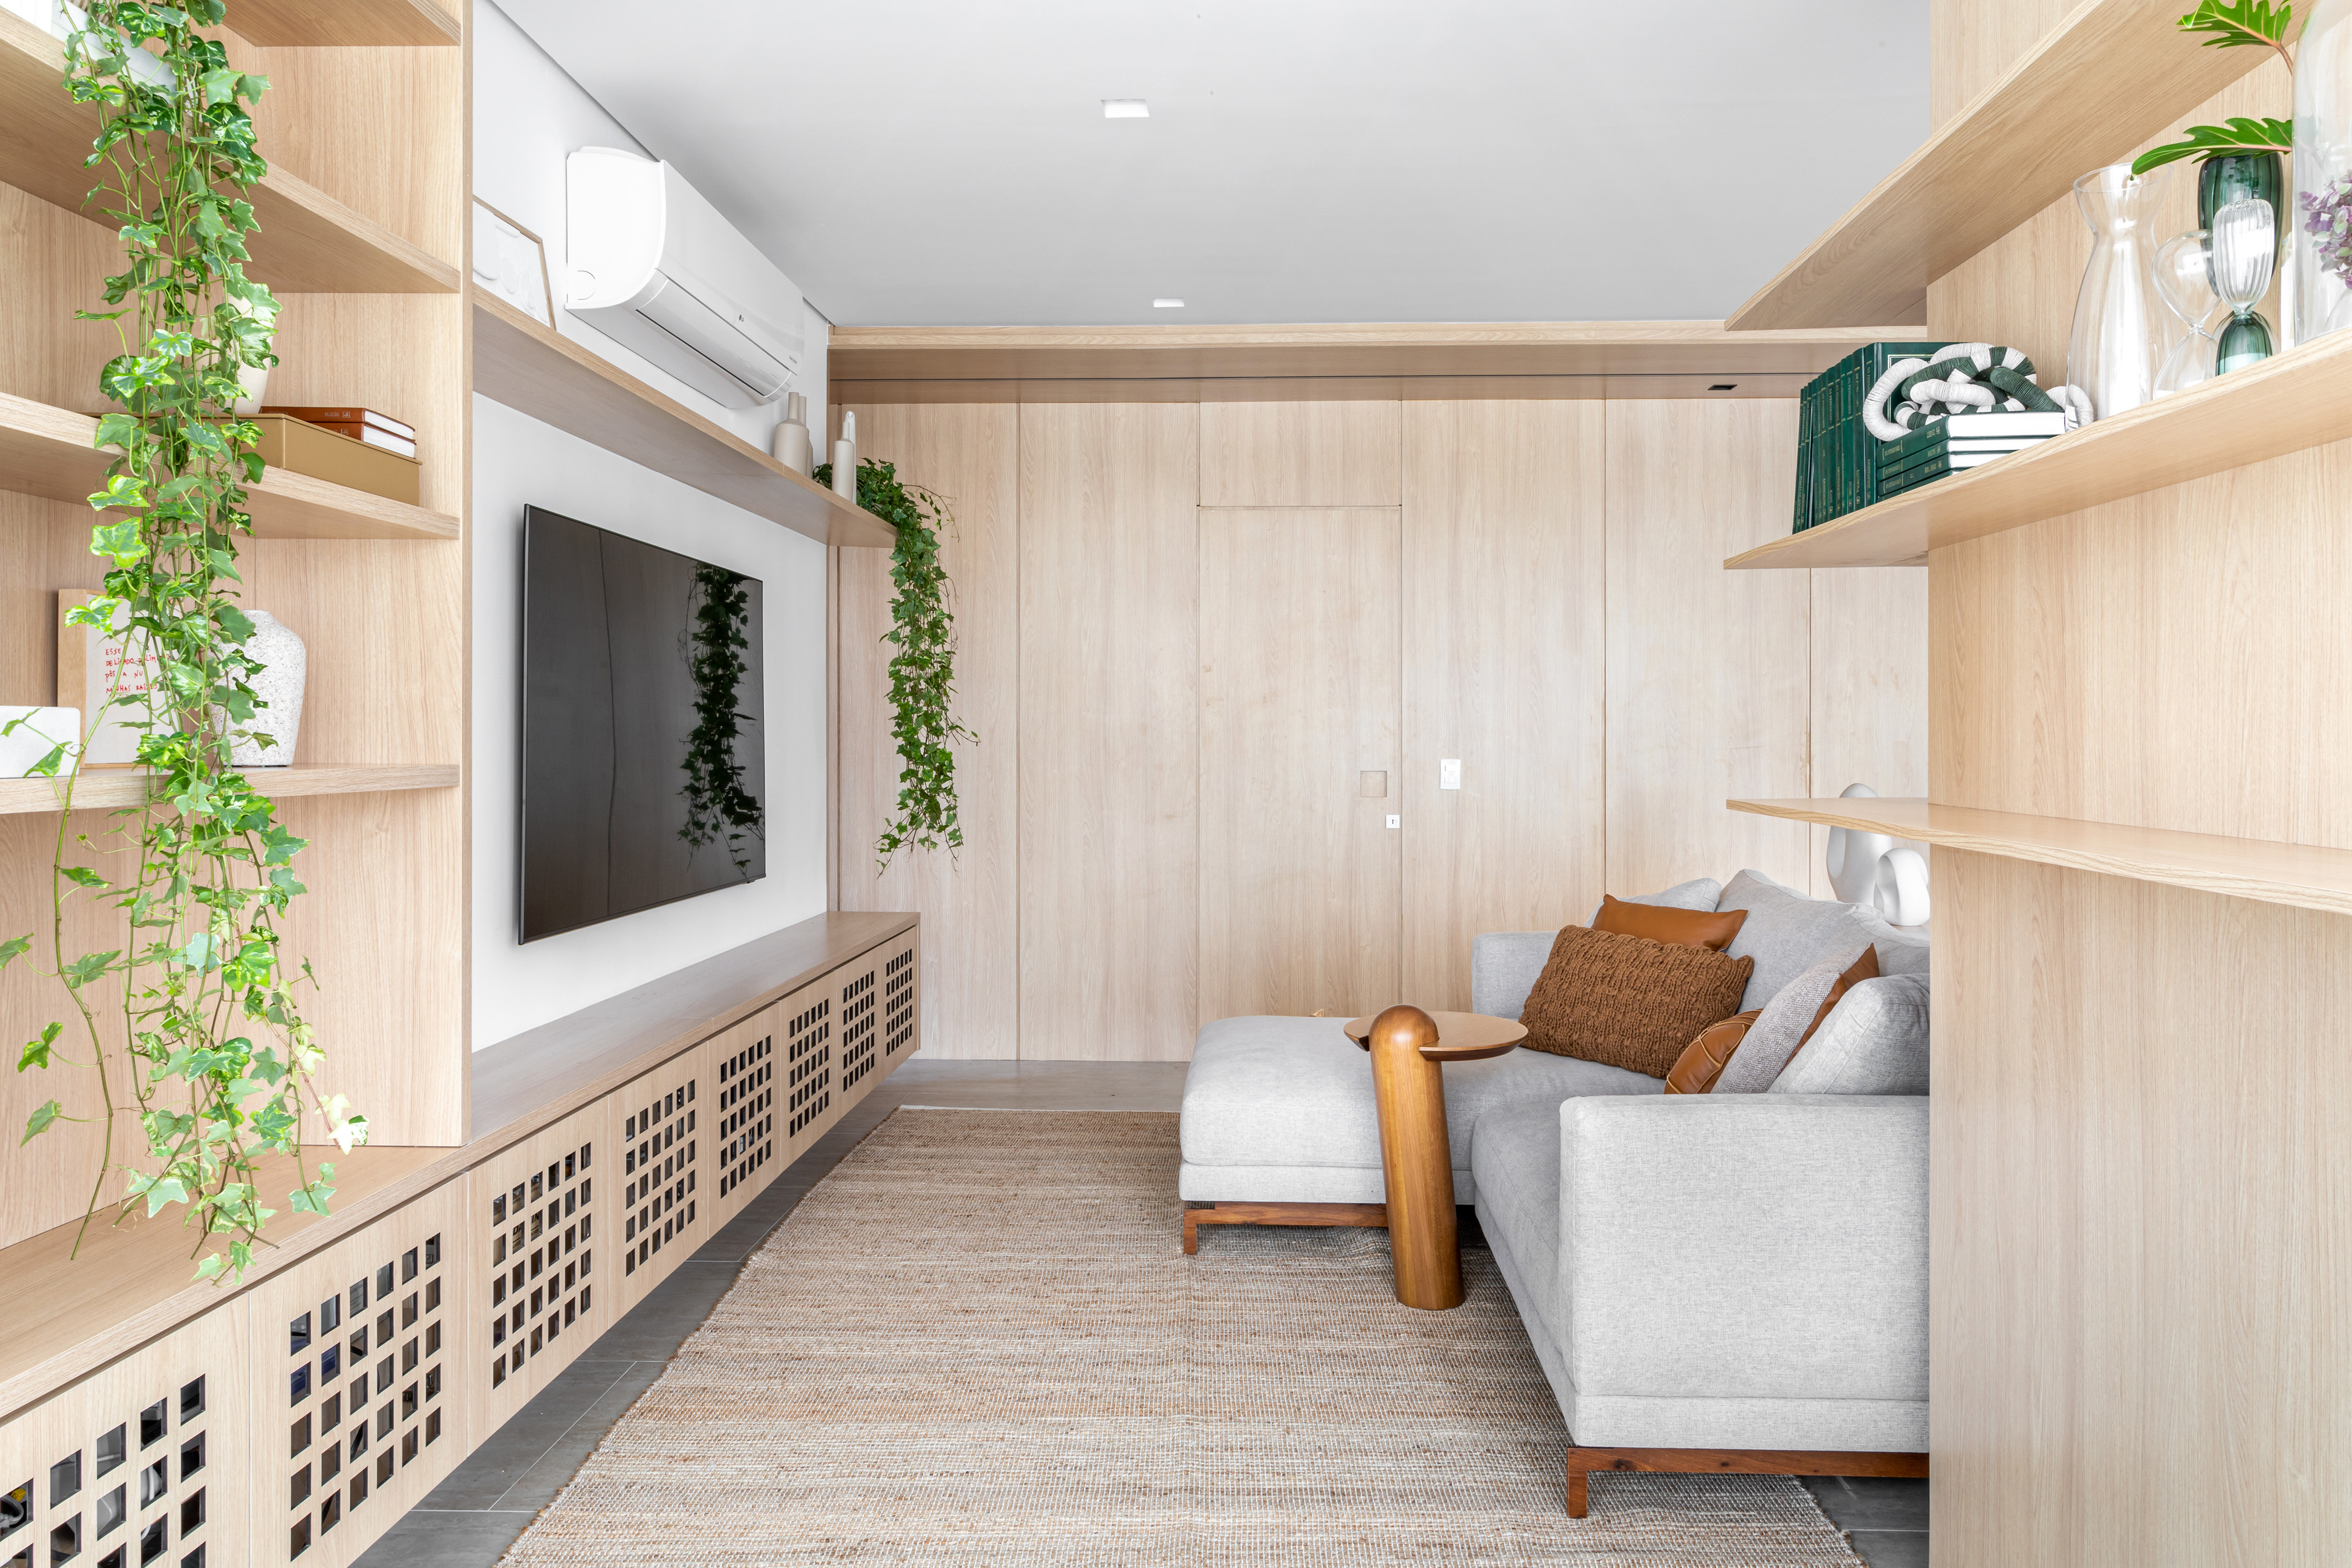 Projeto de NOP Arquitetura. Na foto, sala de estar com parede revestida de madeira clara, rack vazado e sofá cinza claro.